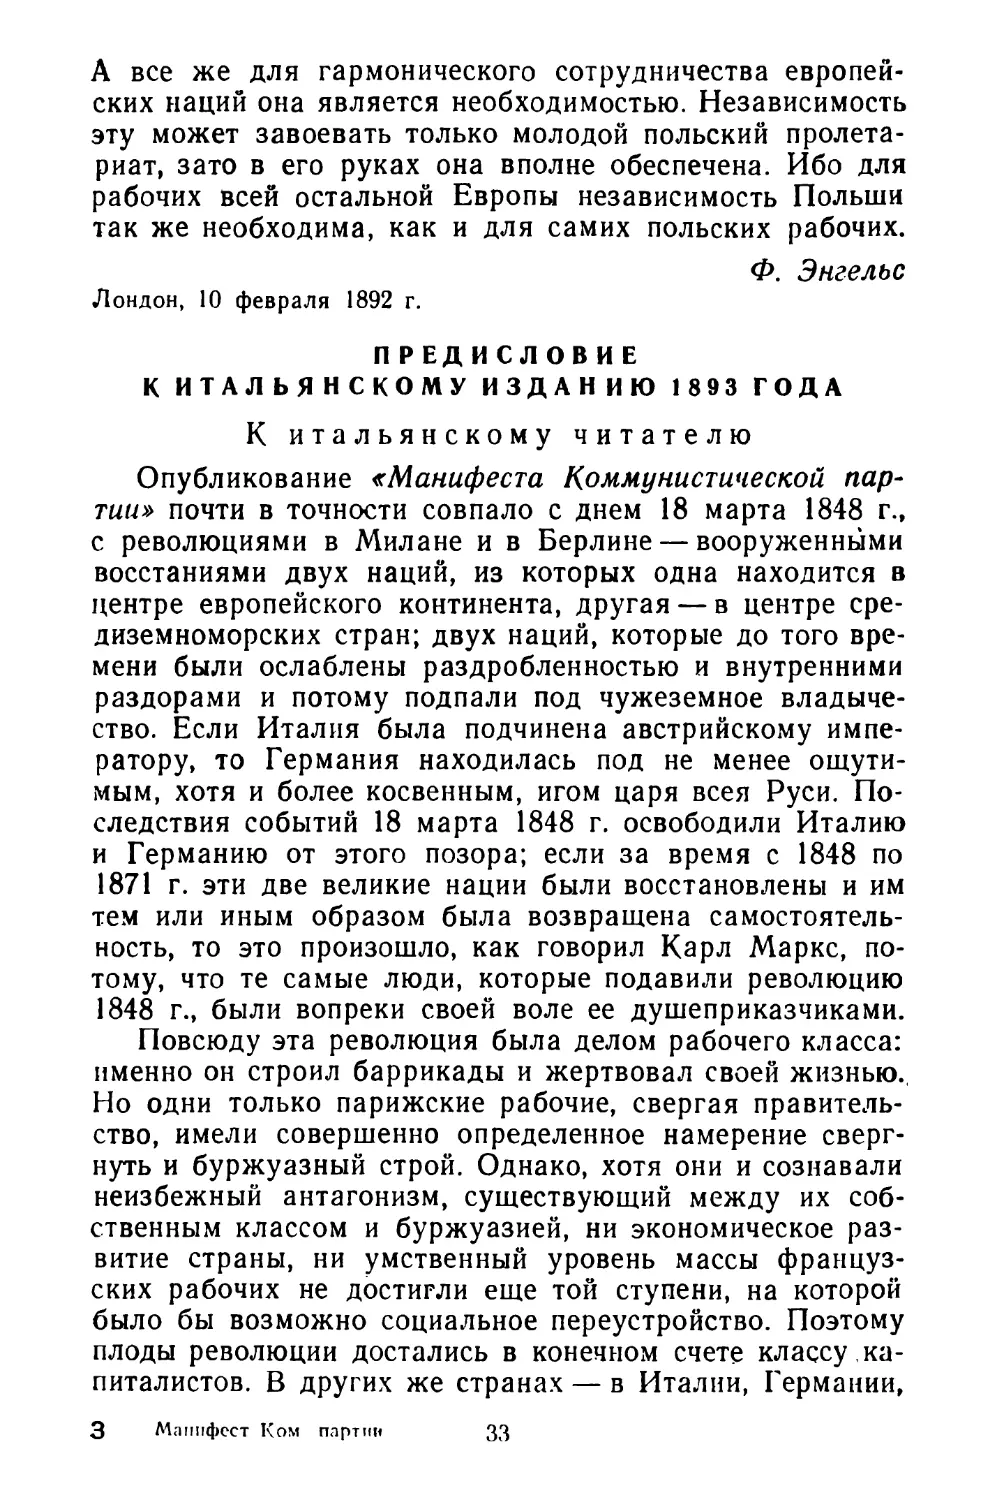 Предисловие к итальянскому изданию 1893 года